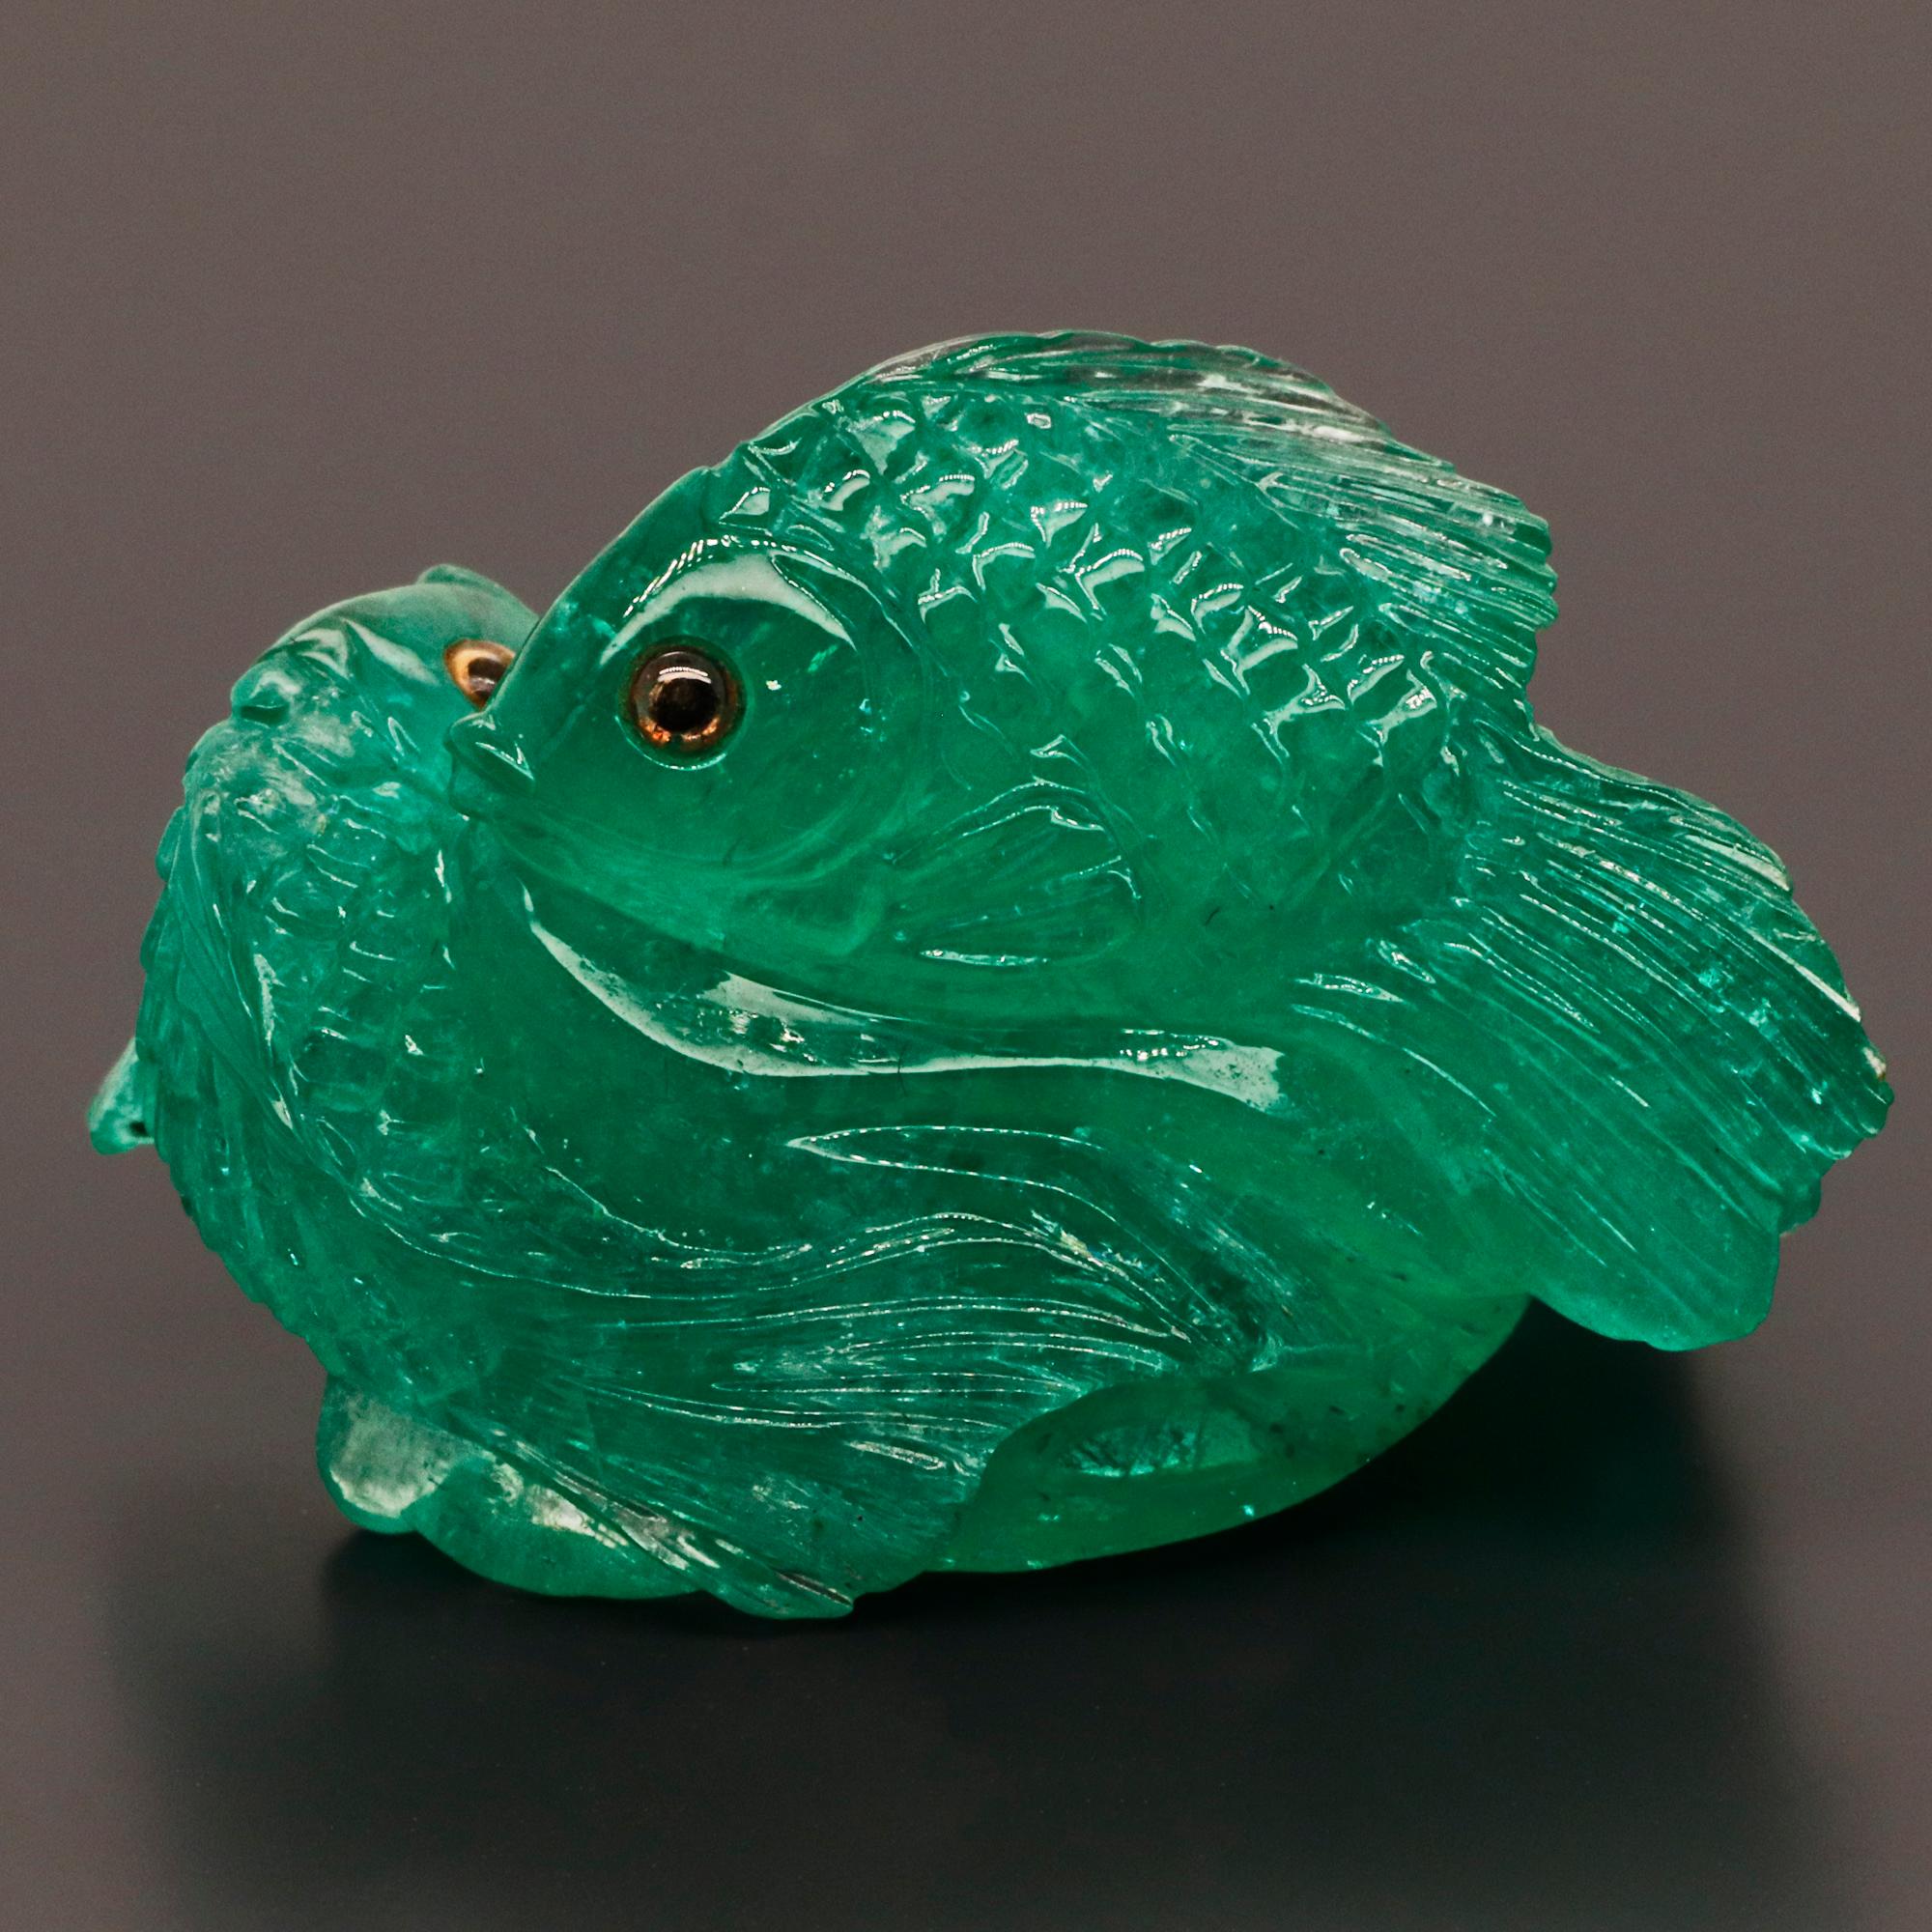 Une synergie entre la pierre précieuse et l'art dans une pièce subtile - Emerald Fish Carving.

Dans les croyances et les pratiques spirituelles modernes, les poissons en sont venus à symboliser toute une série de choses, dont certaines sont